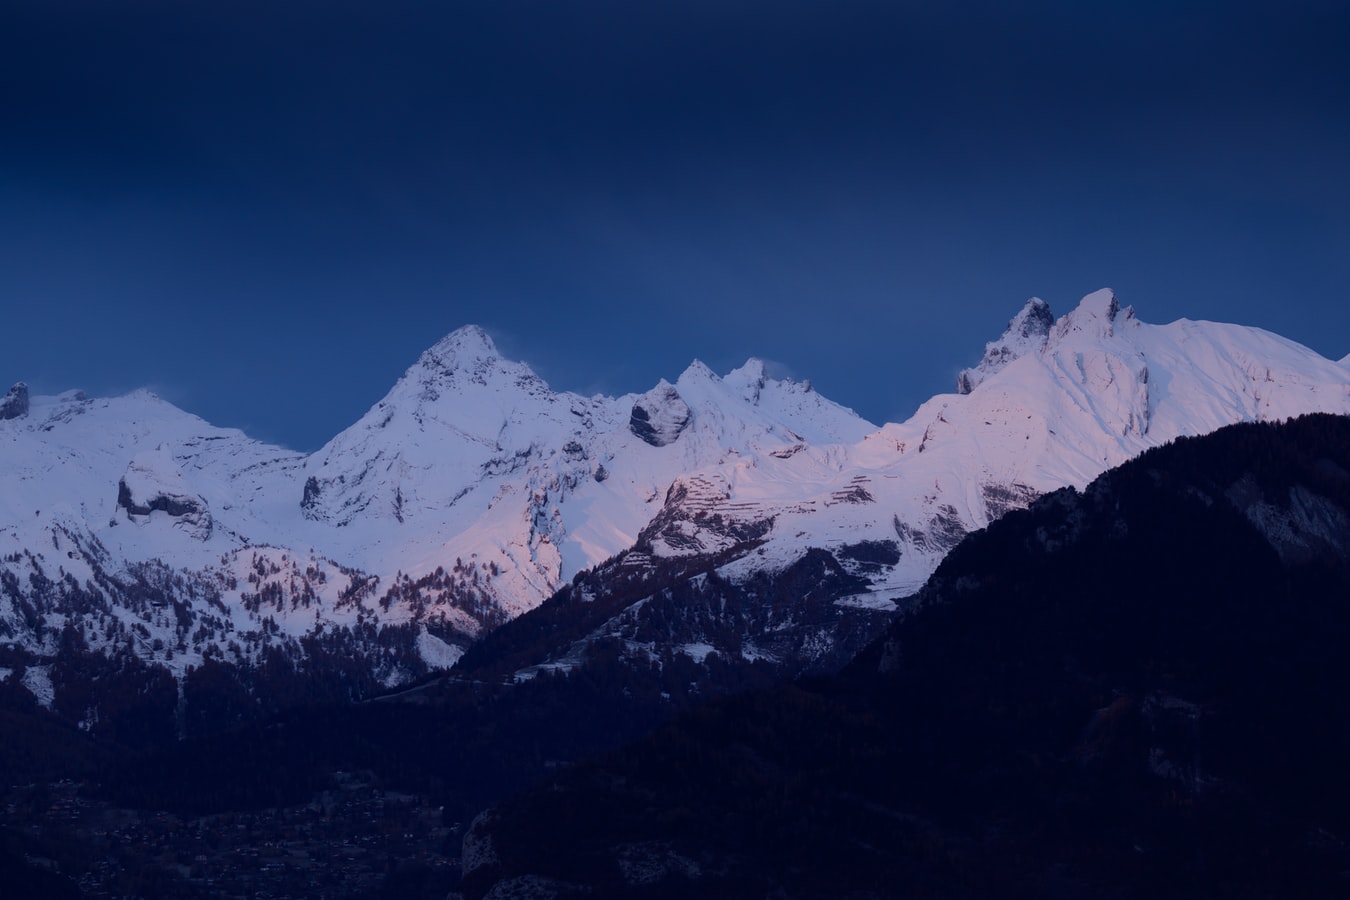 Ελβετία παγετώνες: Λιώνουν με ανησυχητικό ρυθμό